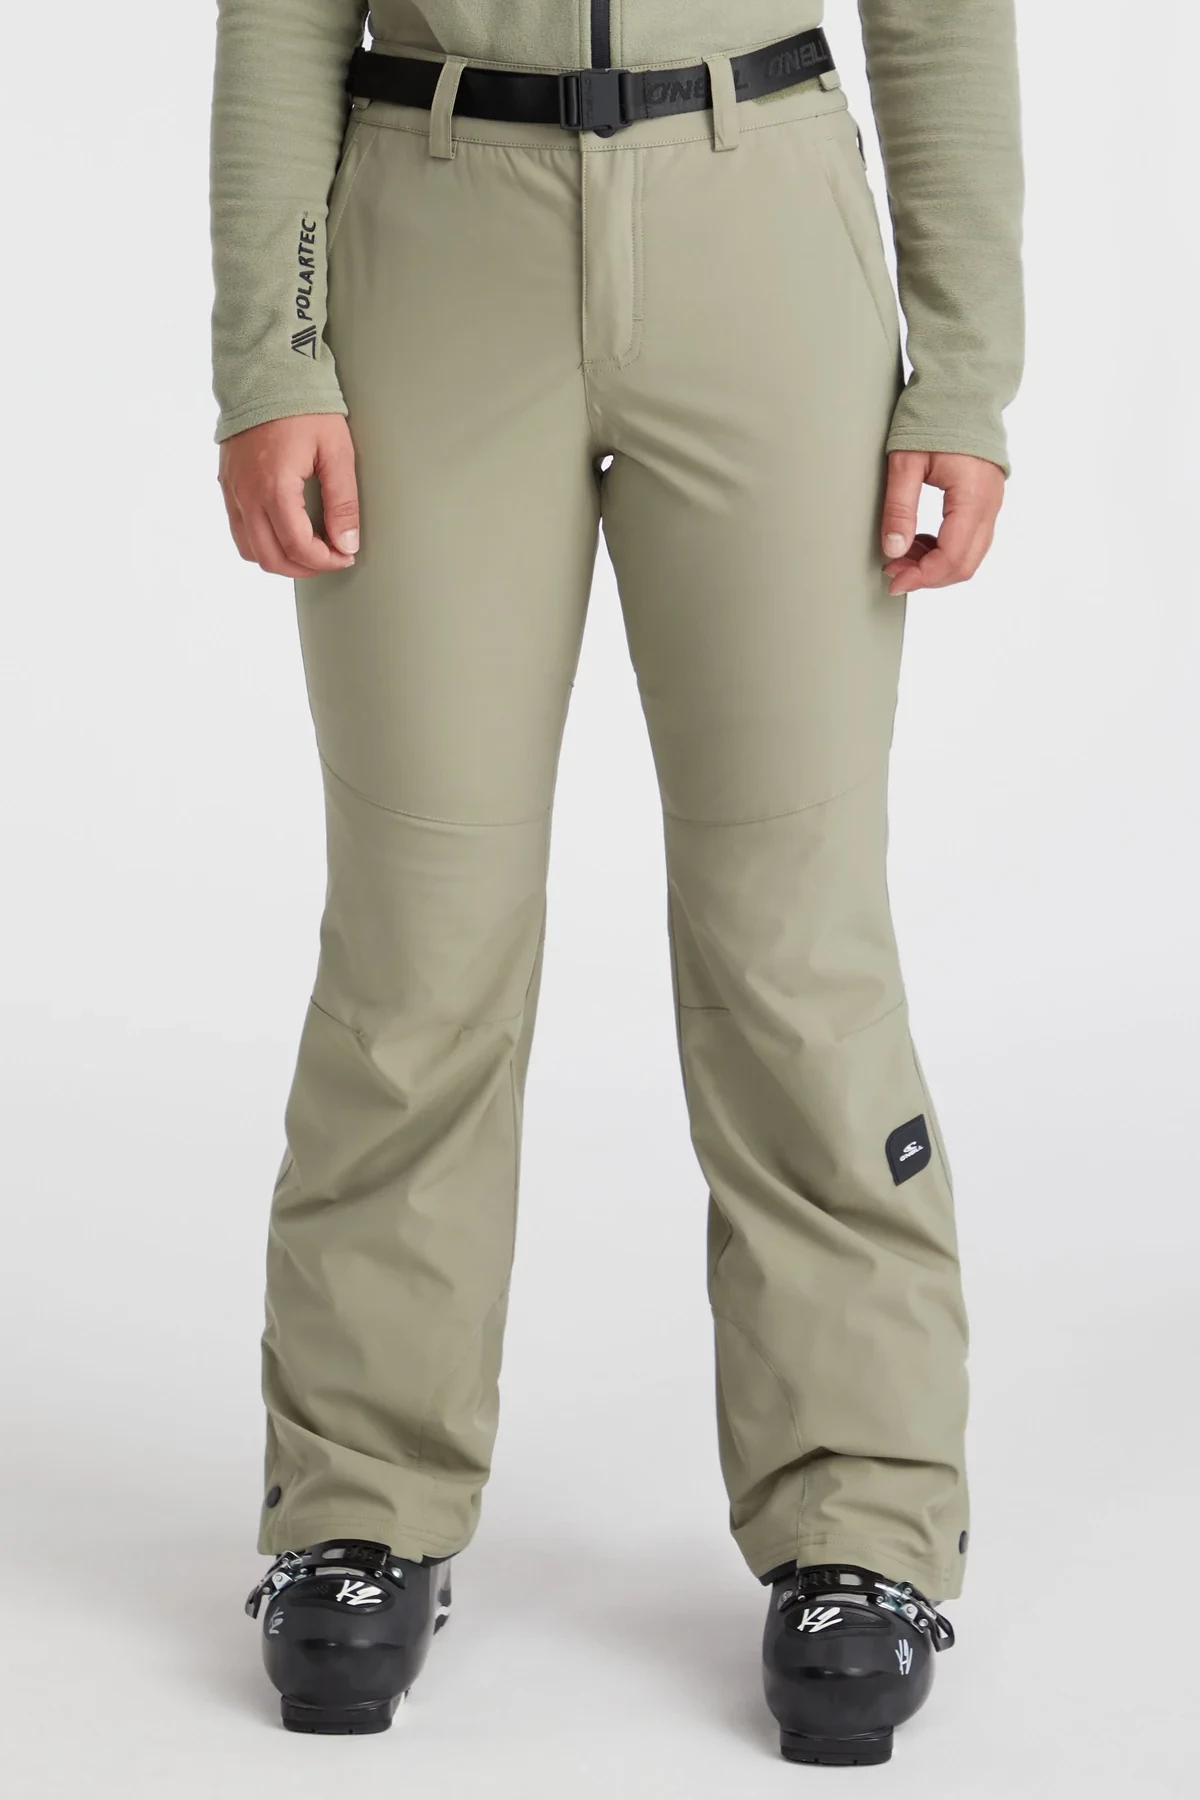 SANDY ski pants – Goldbergh